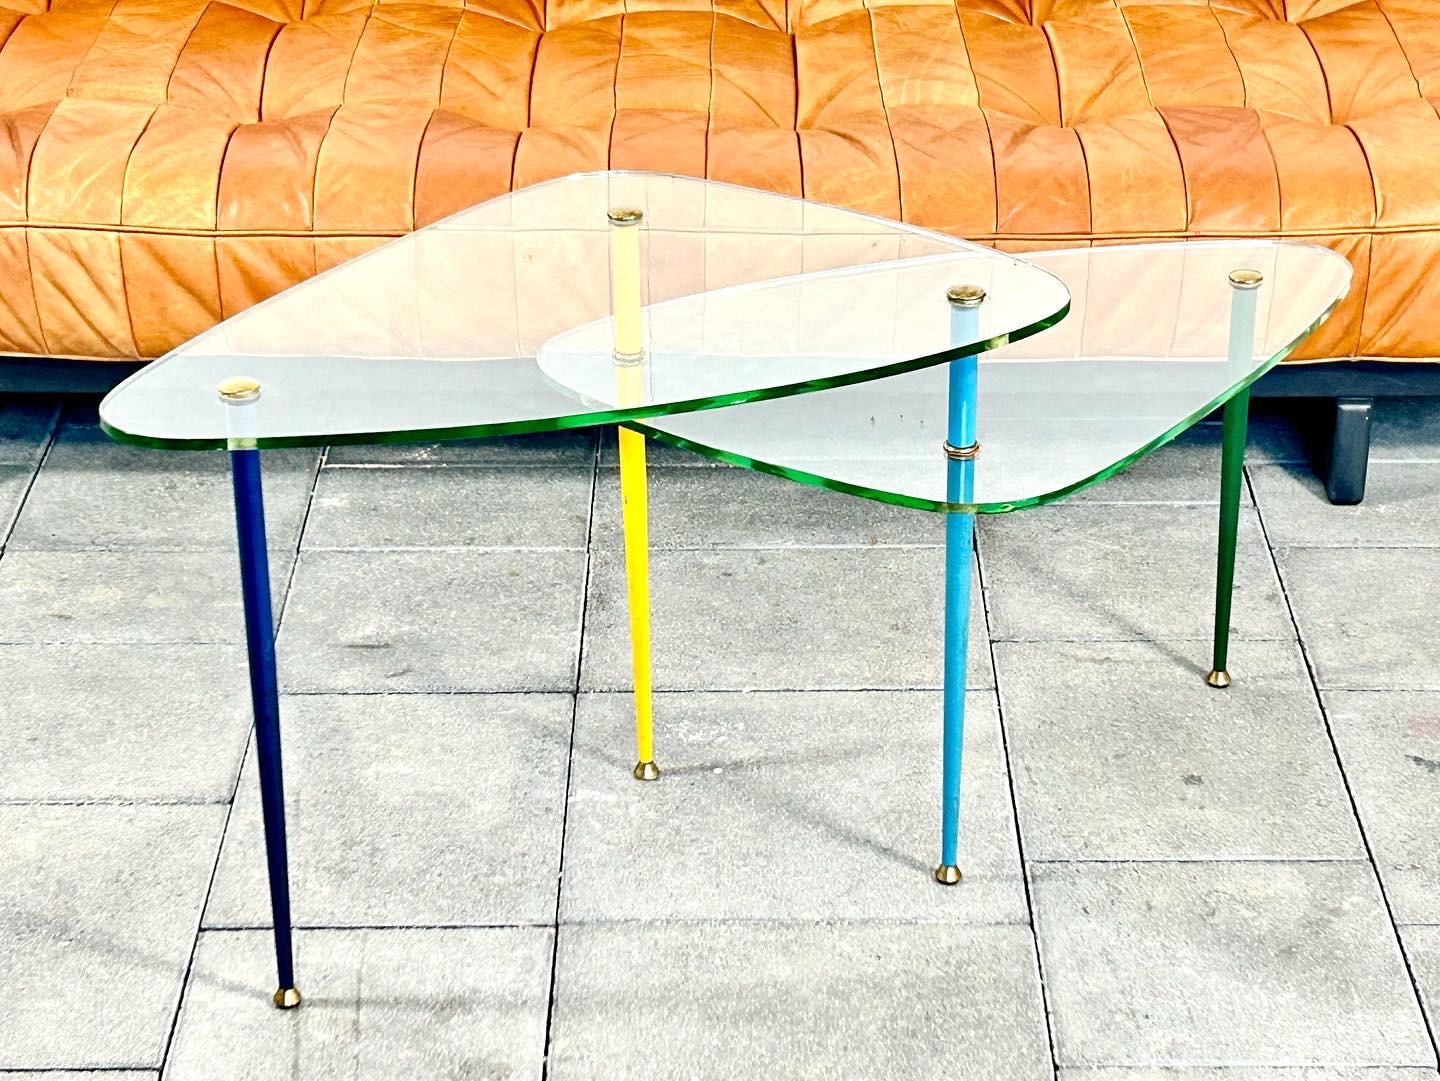 Zweistöckiger Beistelltisch Arlecchino aus den 1950er Jahren, entworfen von Eduardo Paoli im Jahr 1955.

Hergestellt von Vitrex, Italien, ca. 1960.

Schöner kleiner Beistell- oder Couchtisch, entworfen von Edoardo Paoli für Vitrex. Wenn man sich